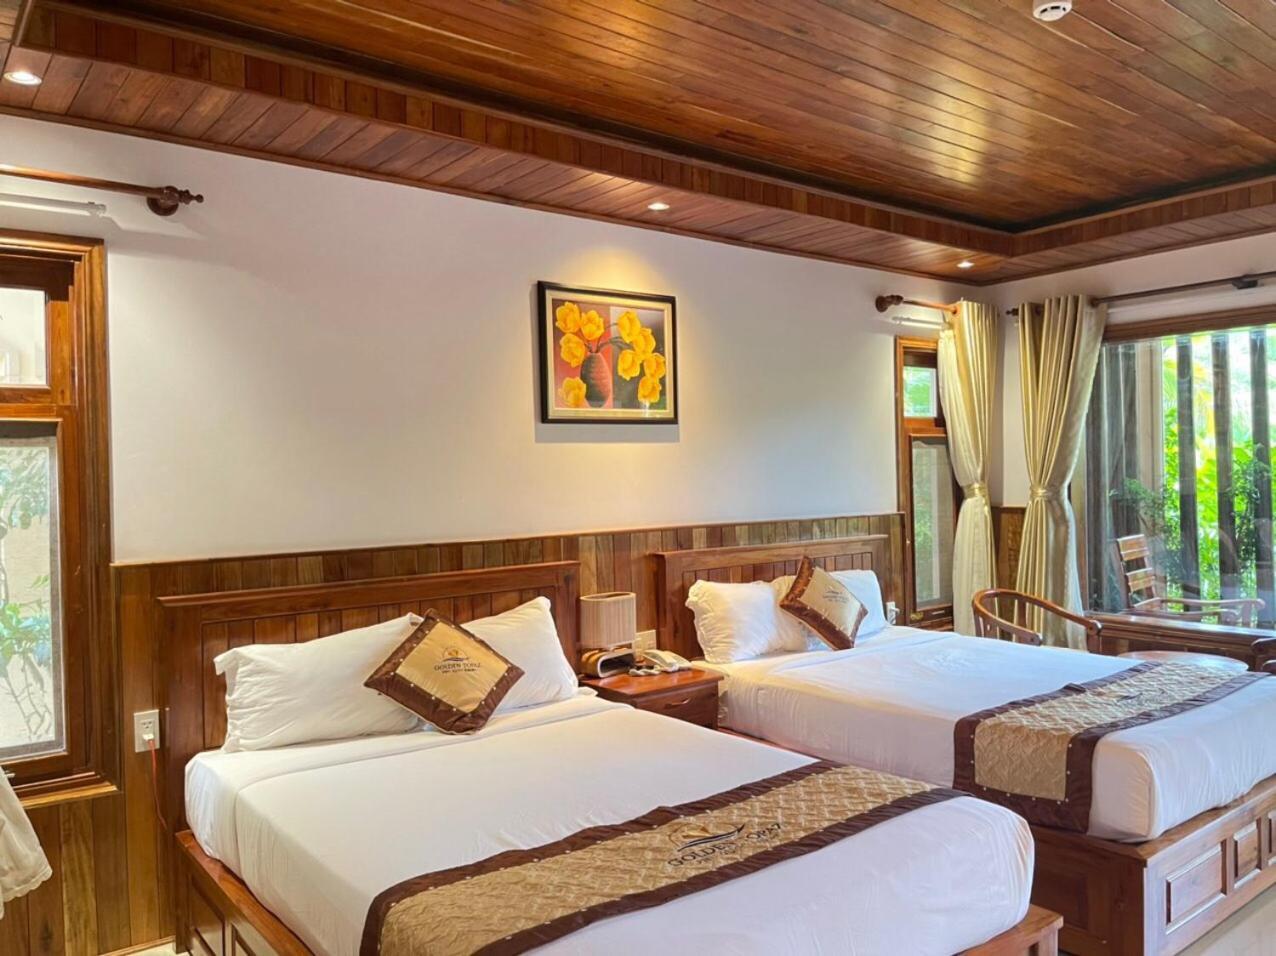 Golden Topaz Phu Quoc Resort Экстерьер фото